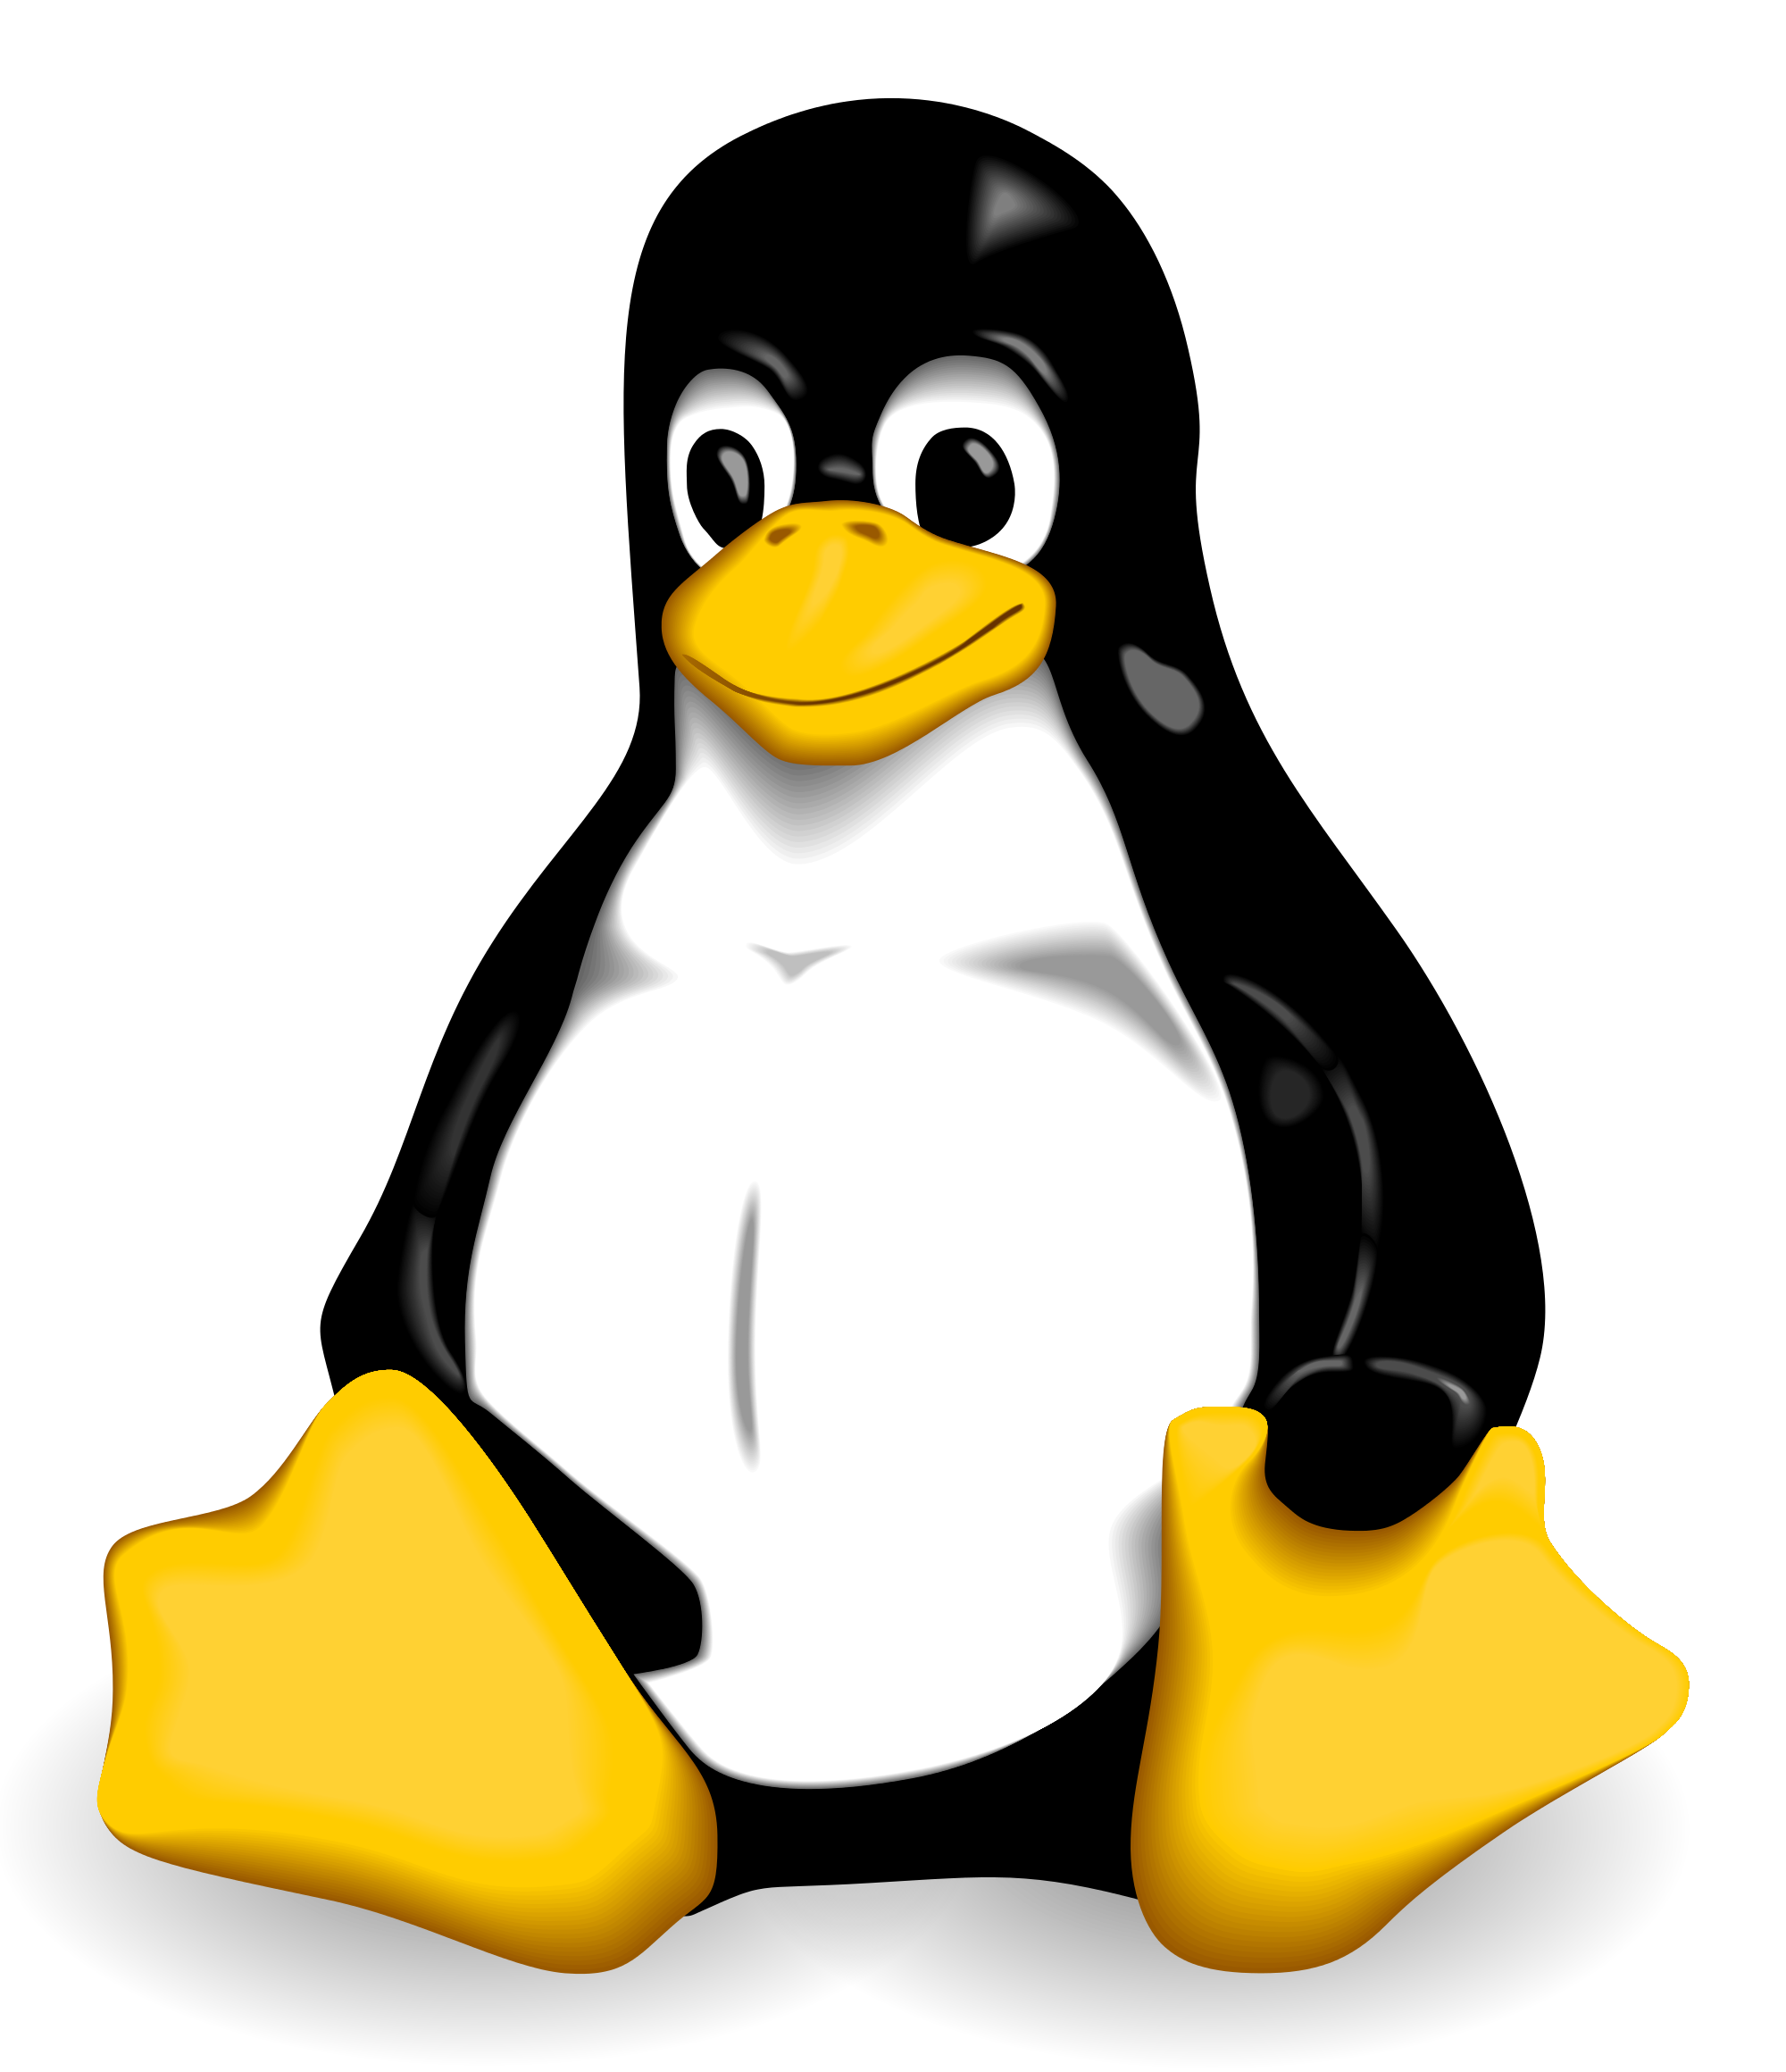 The tux penguin